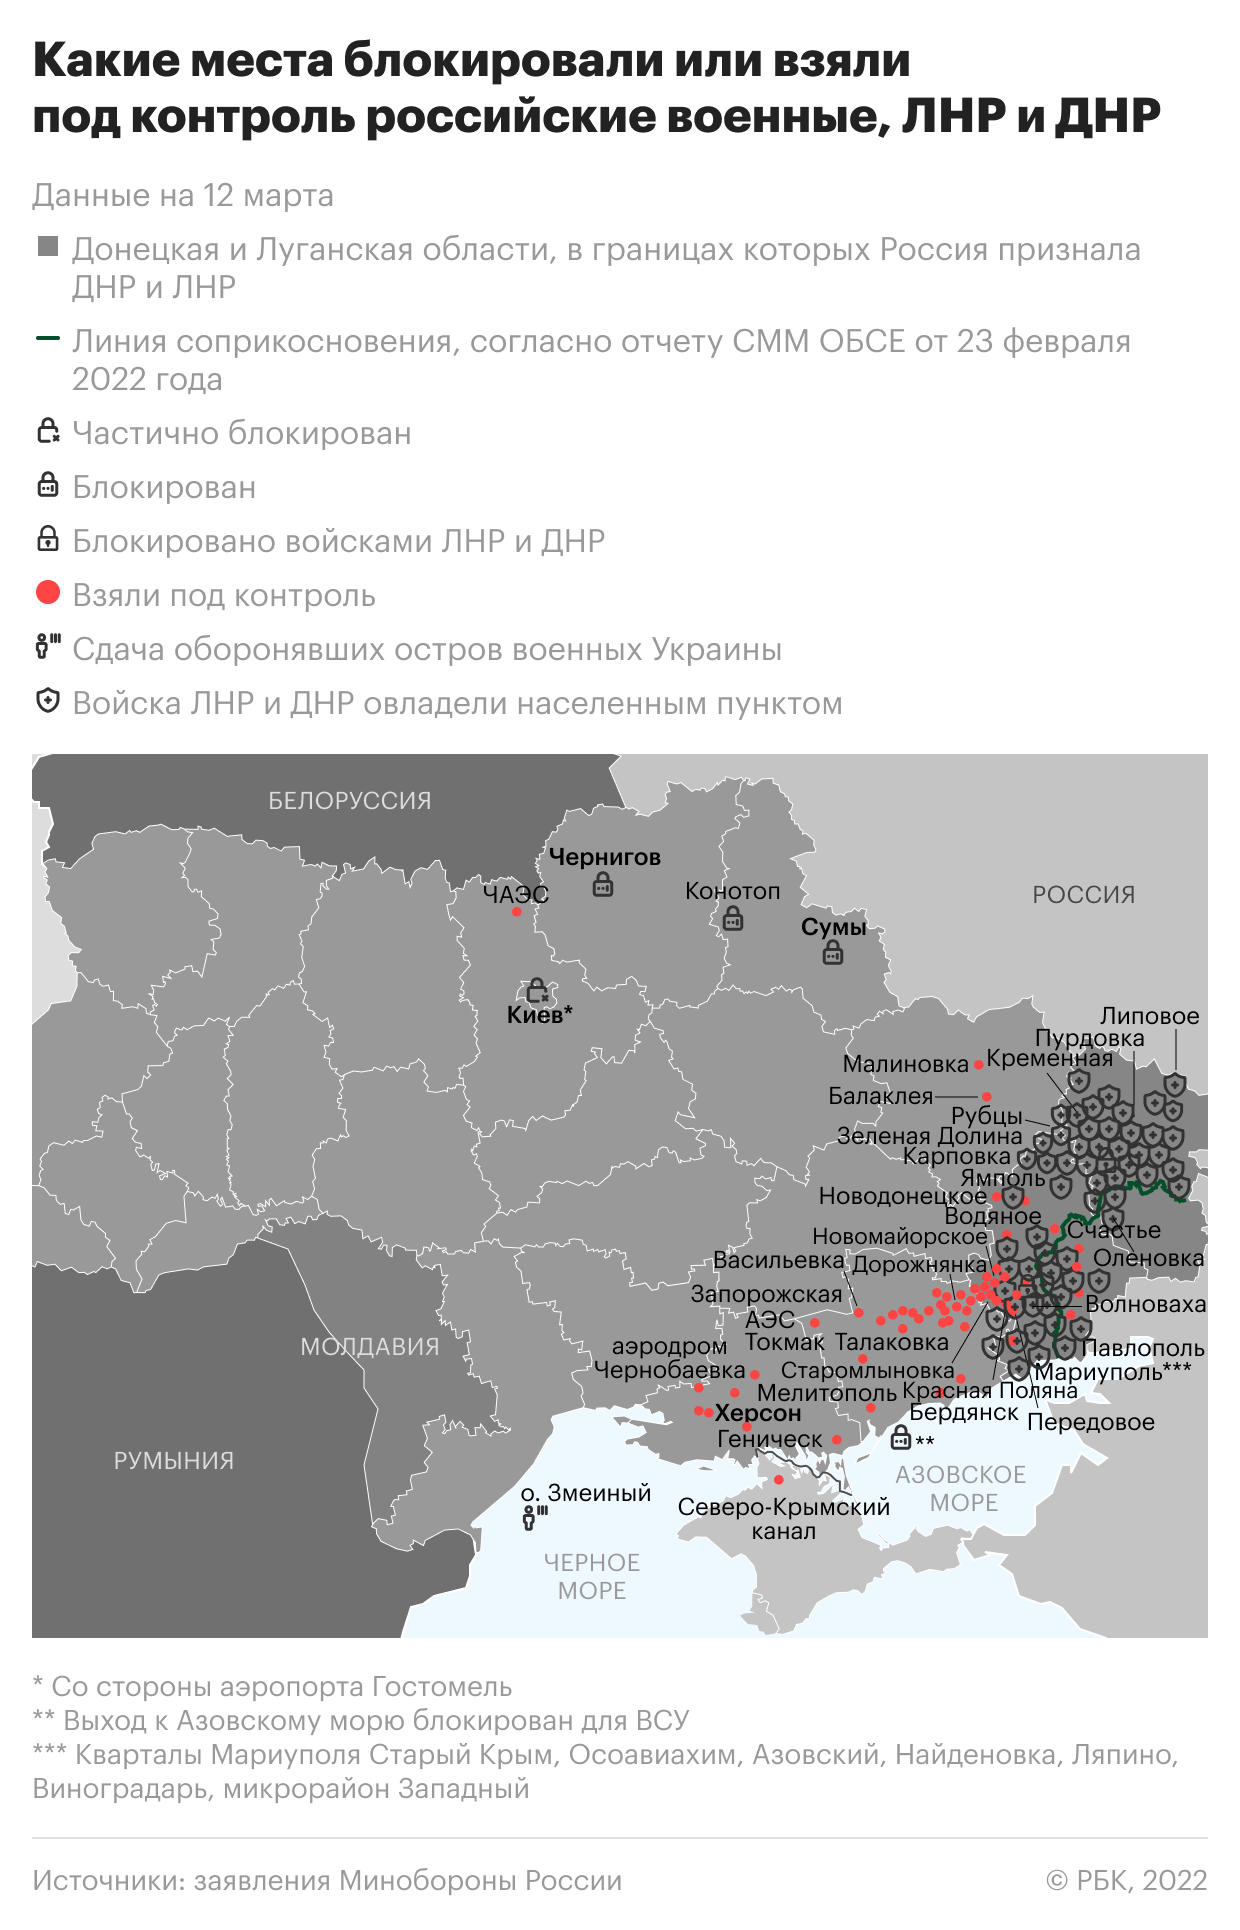 Минобороны сообщило о более 6,9 тыс. иностранных «заложников» у Украины"/>













